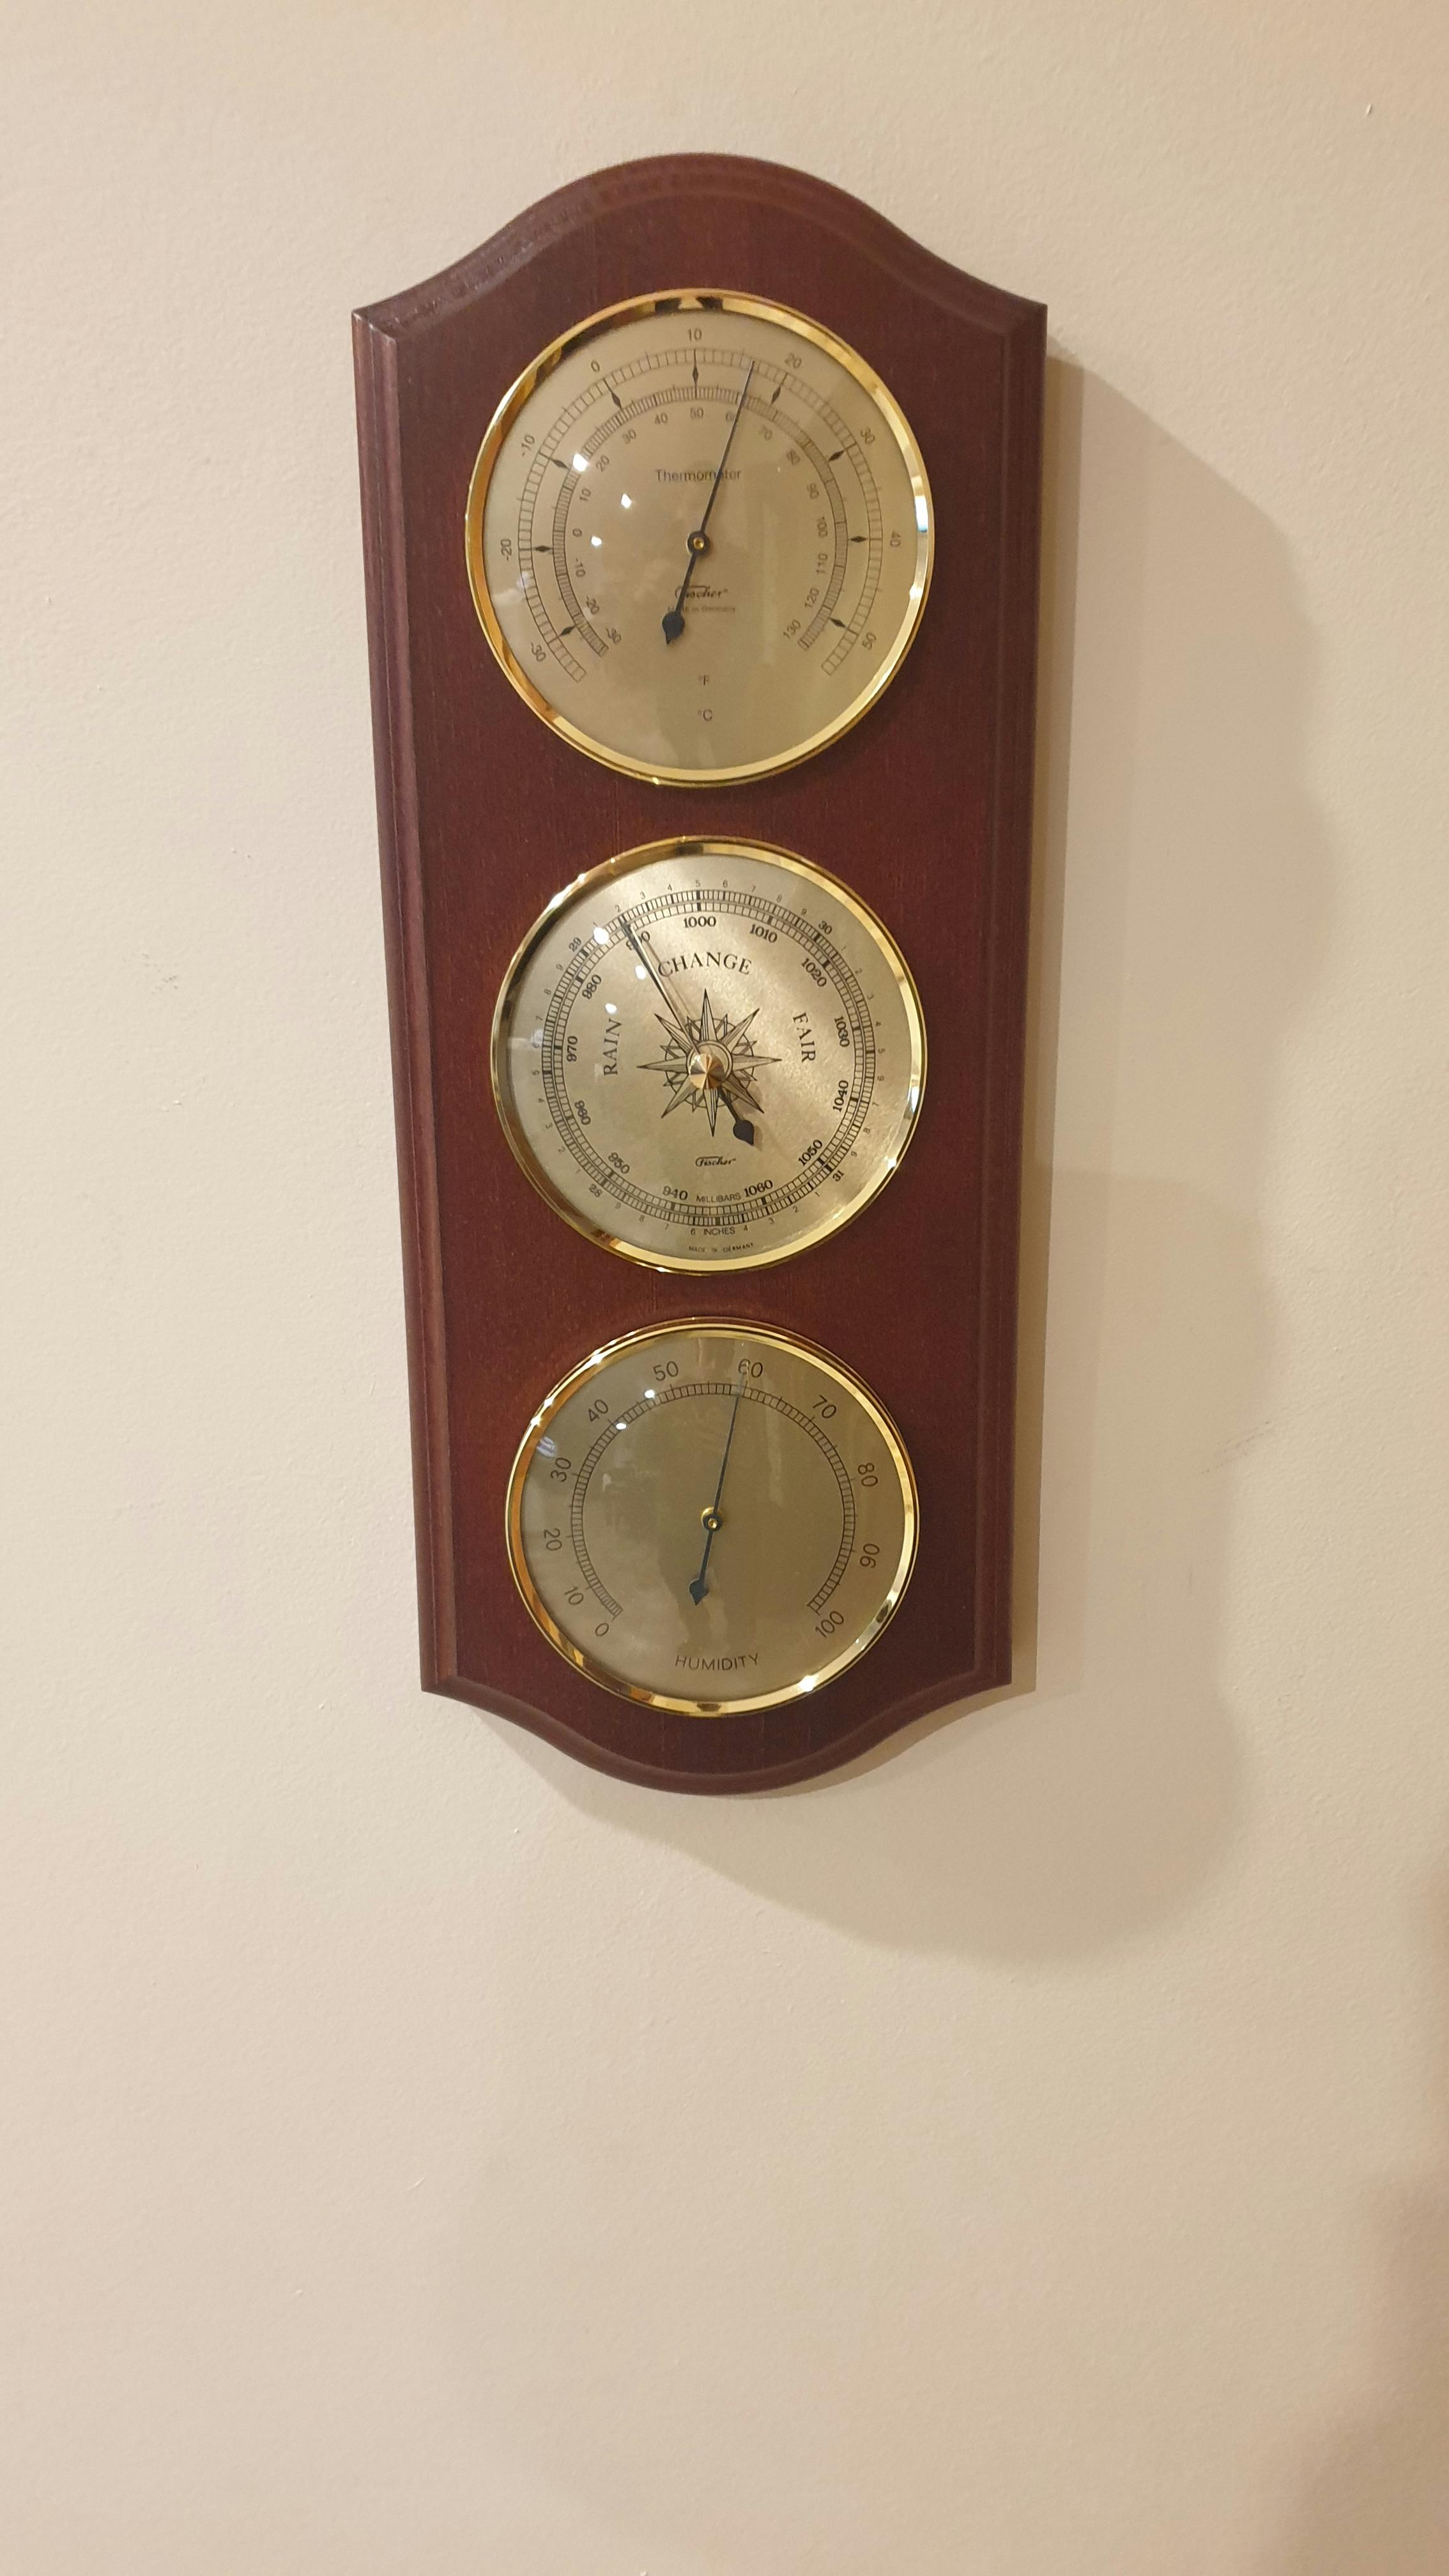 silent clock australia